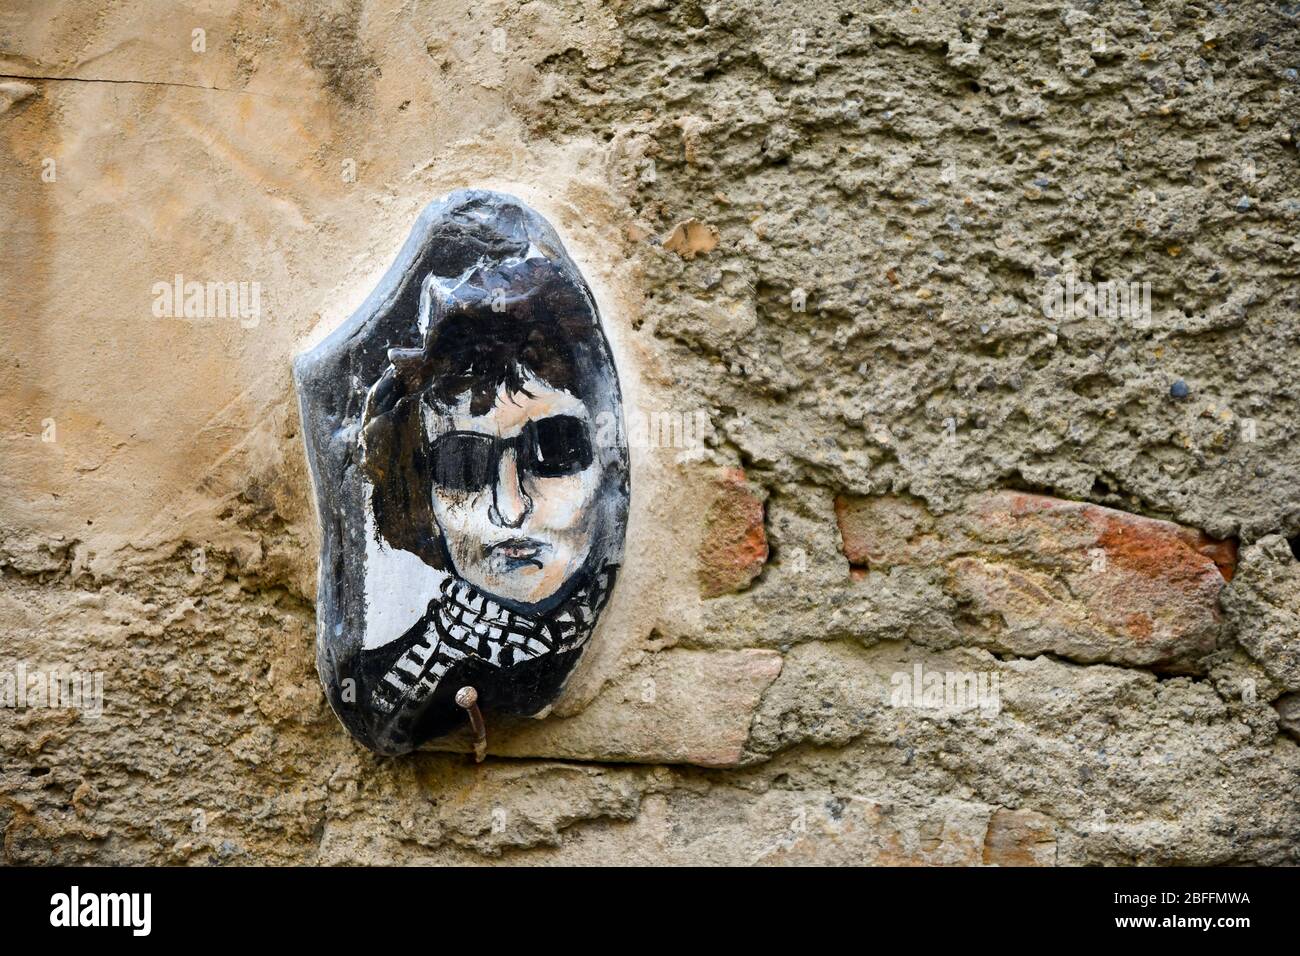 Gros plan sur une pierre peinte à la main avec le portrait de Bob Dylan, chanteur-compositeur américain, sur un vieux mur, Bussana Vecchia, Imperia, Ligurie, Italie Banque D'Images